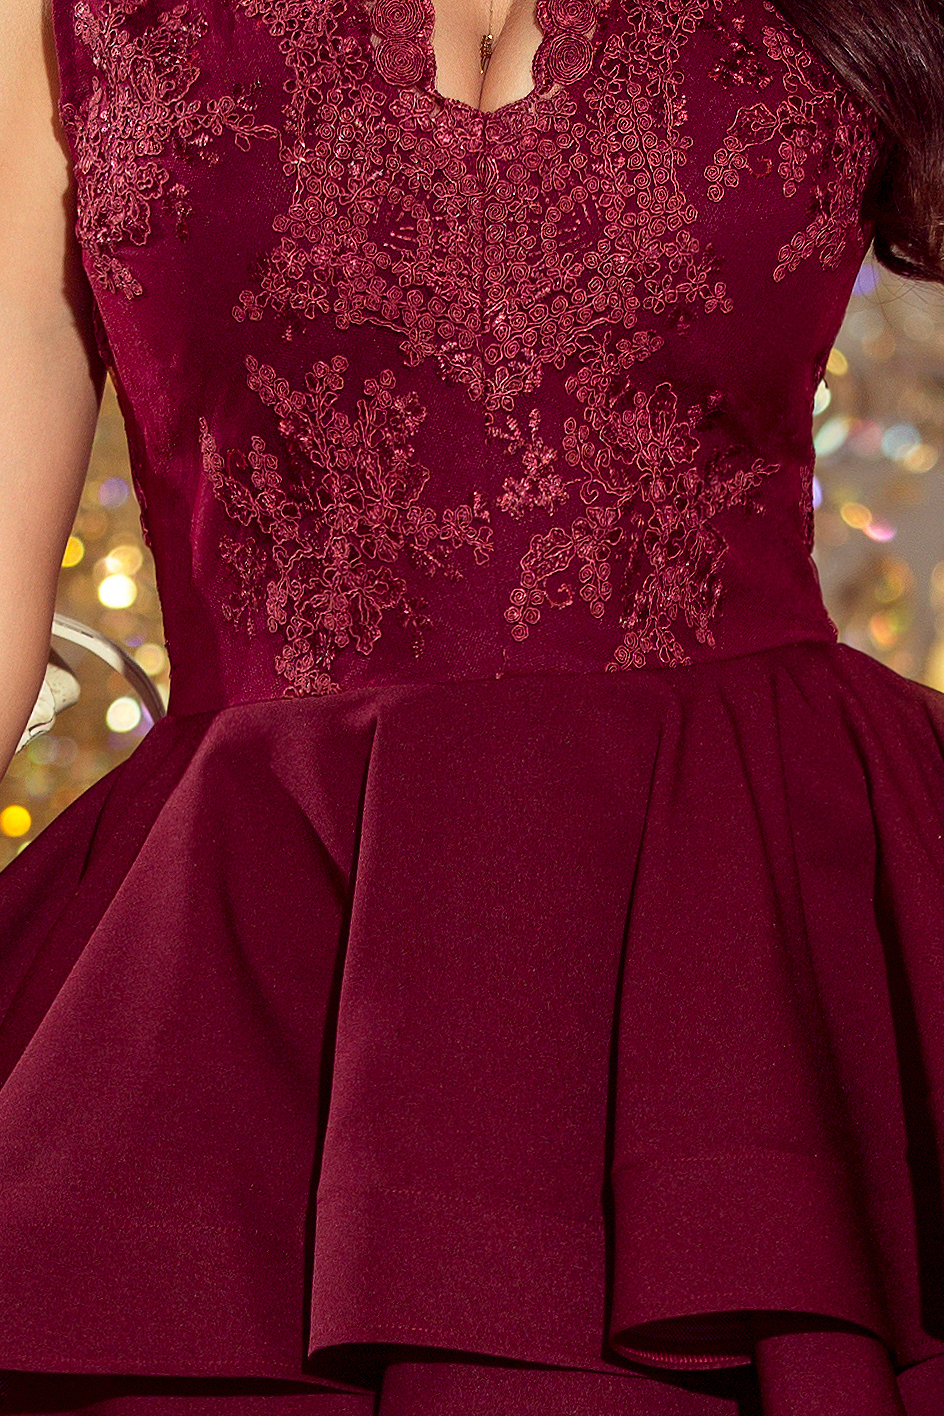 200-8 CHARLOTTE - ekskluzywna sukienka z koronkowym dekoltem - BORDOWA